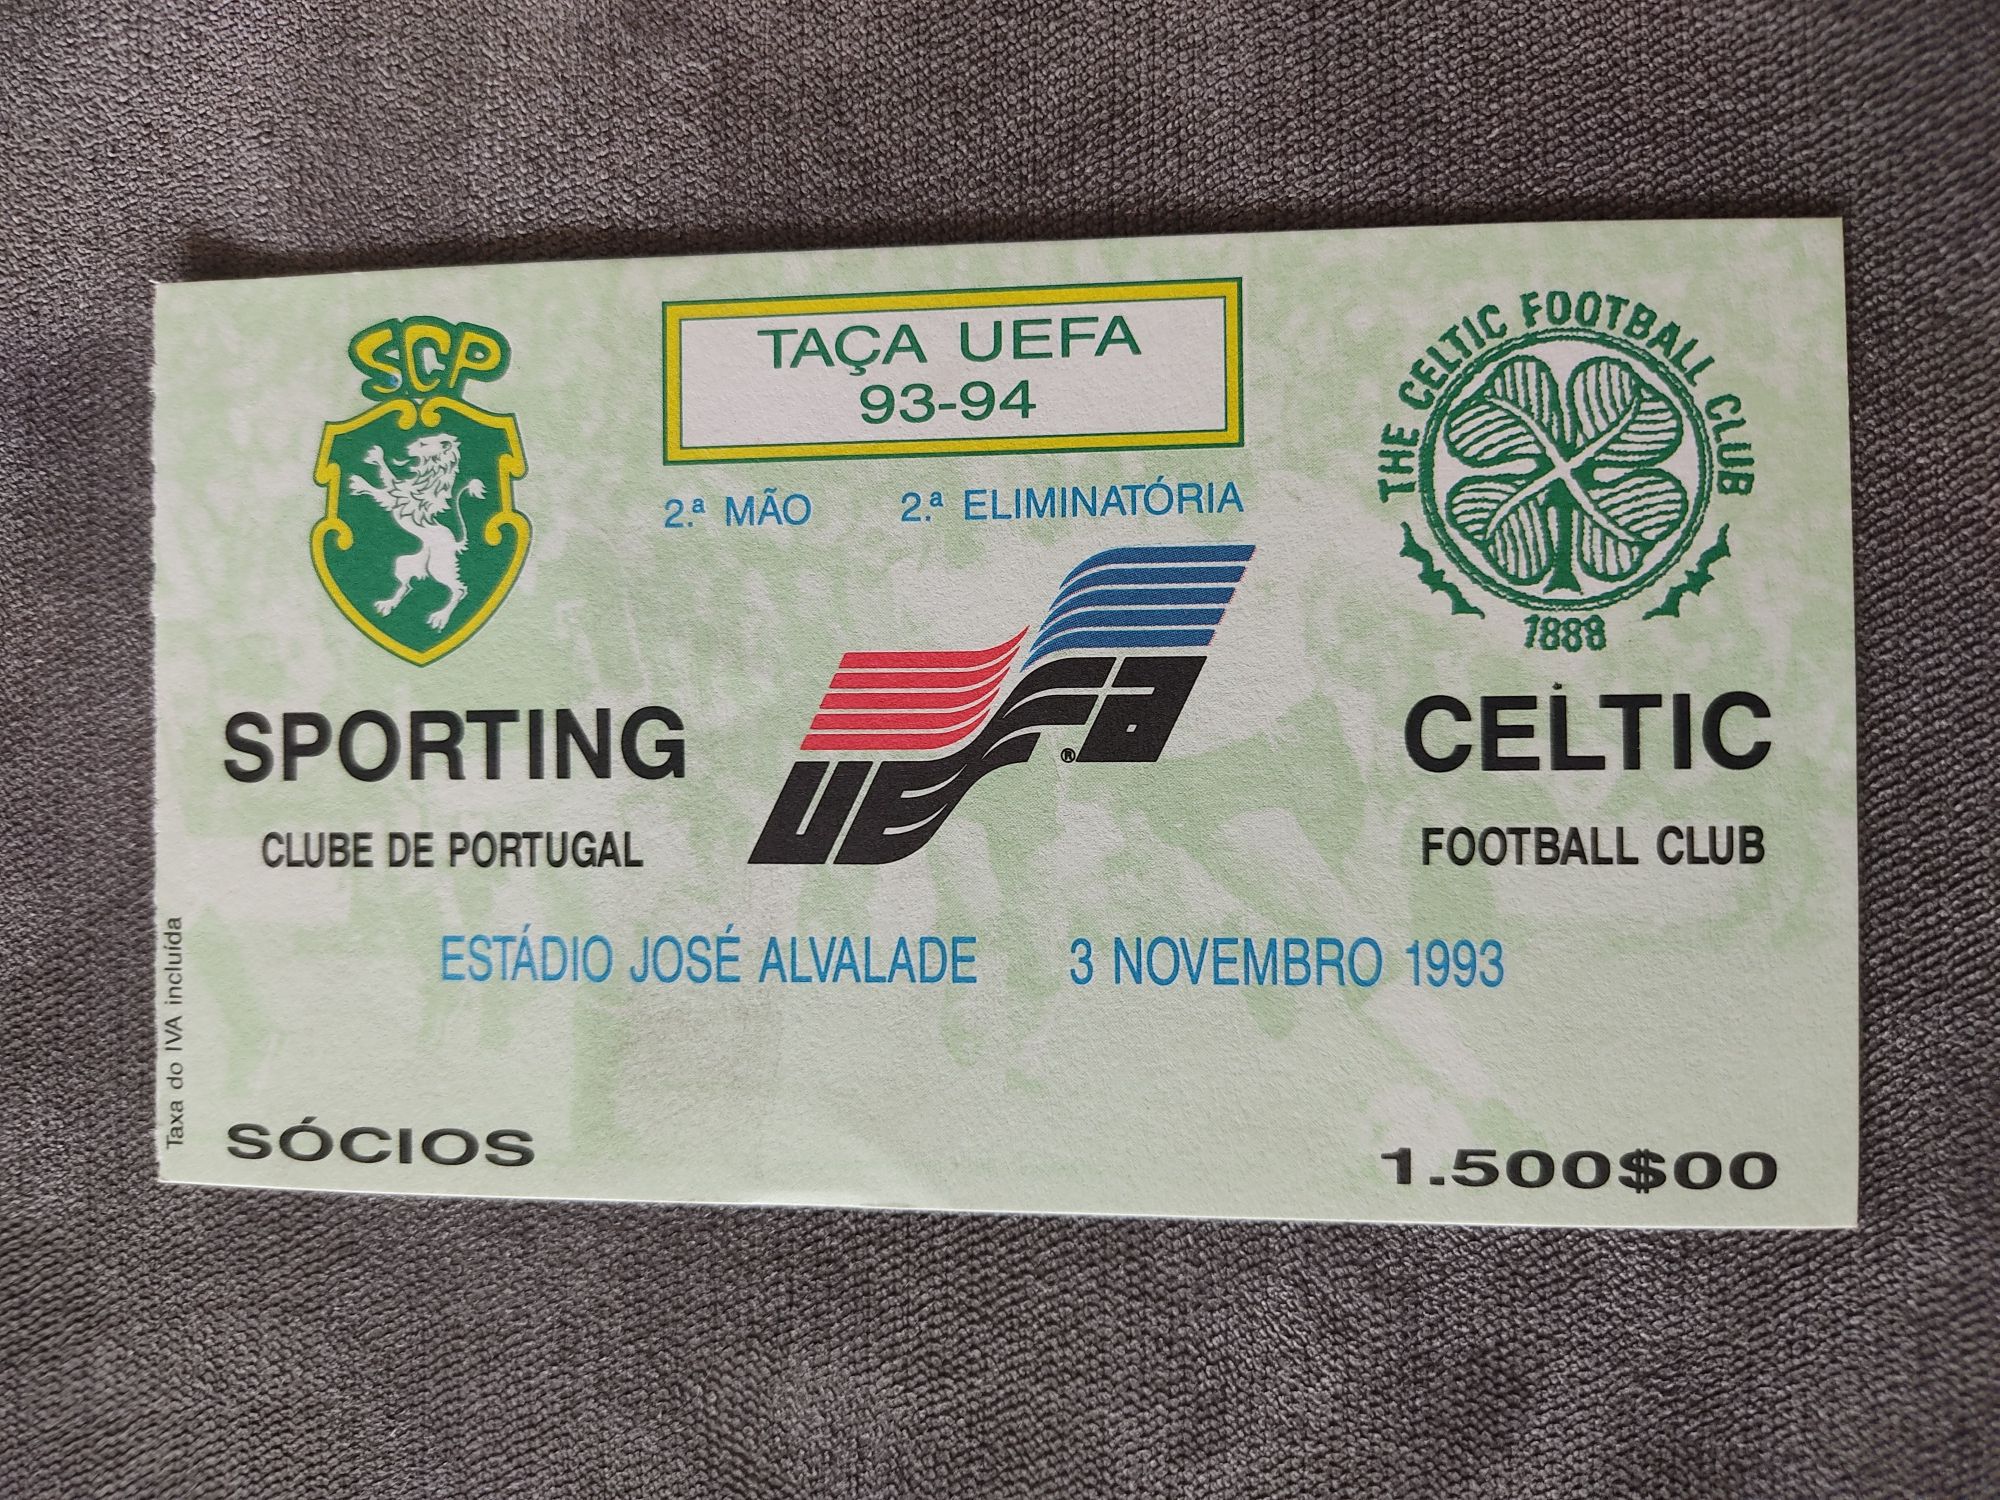 Bilhete Sporting Celtic UEFA 1993